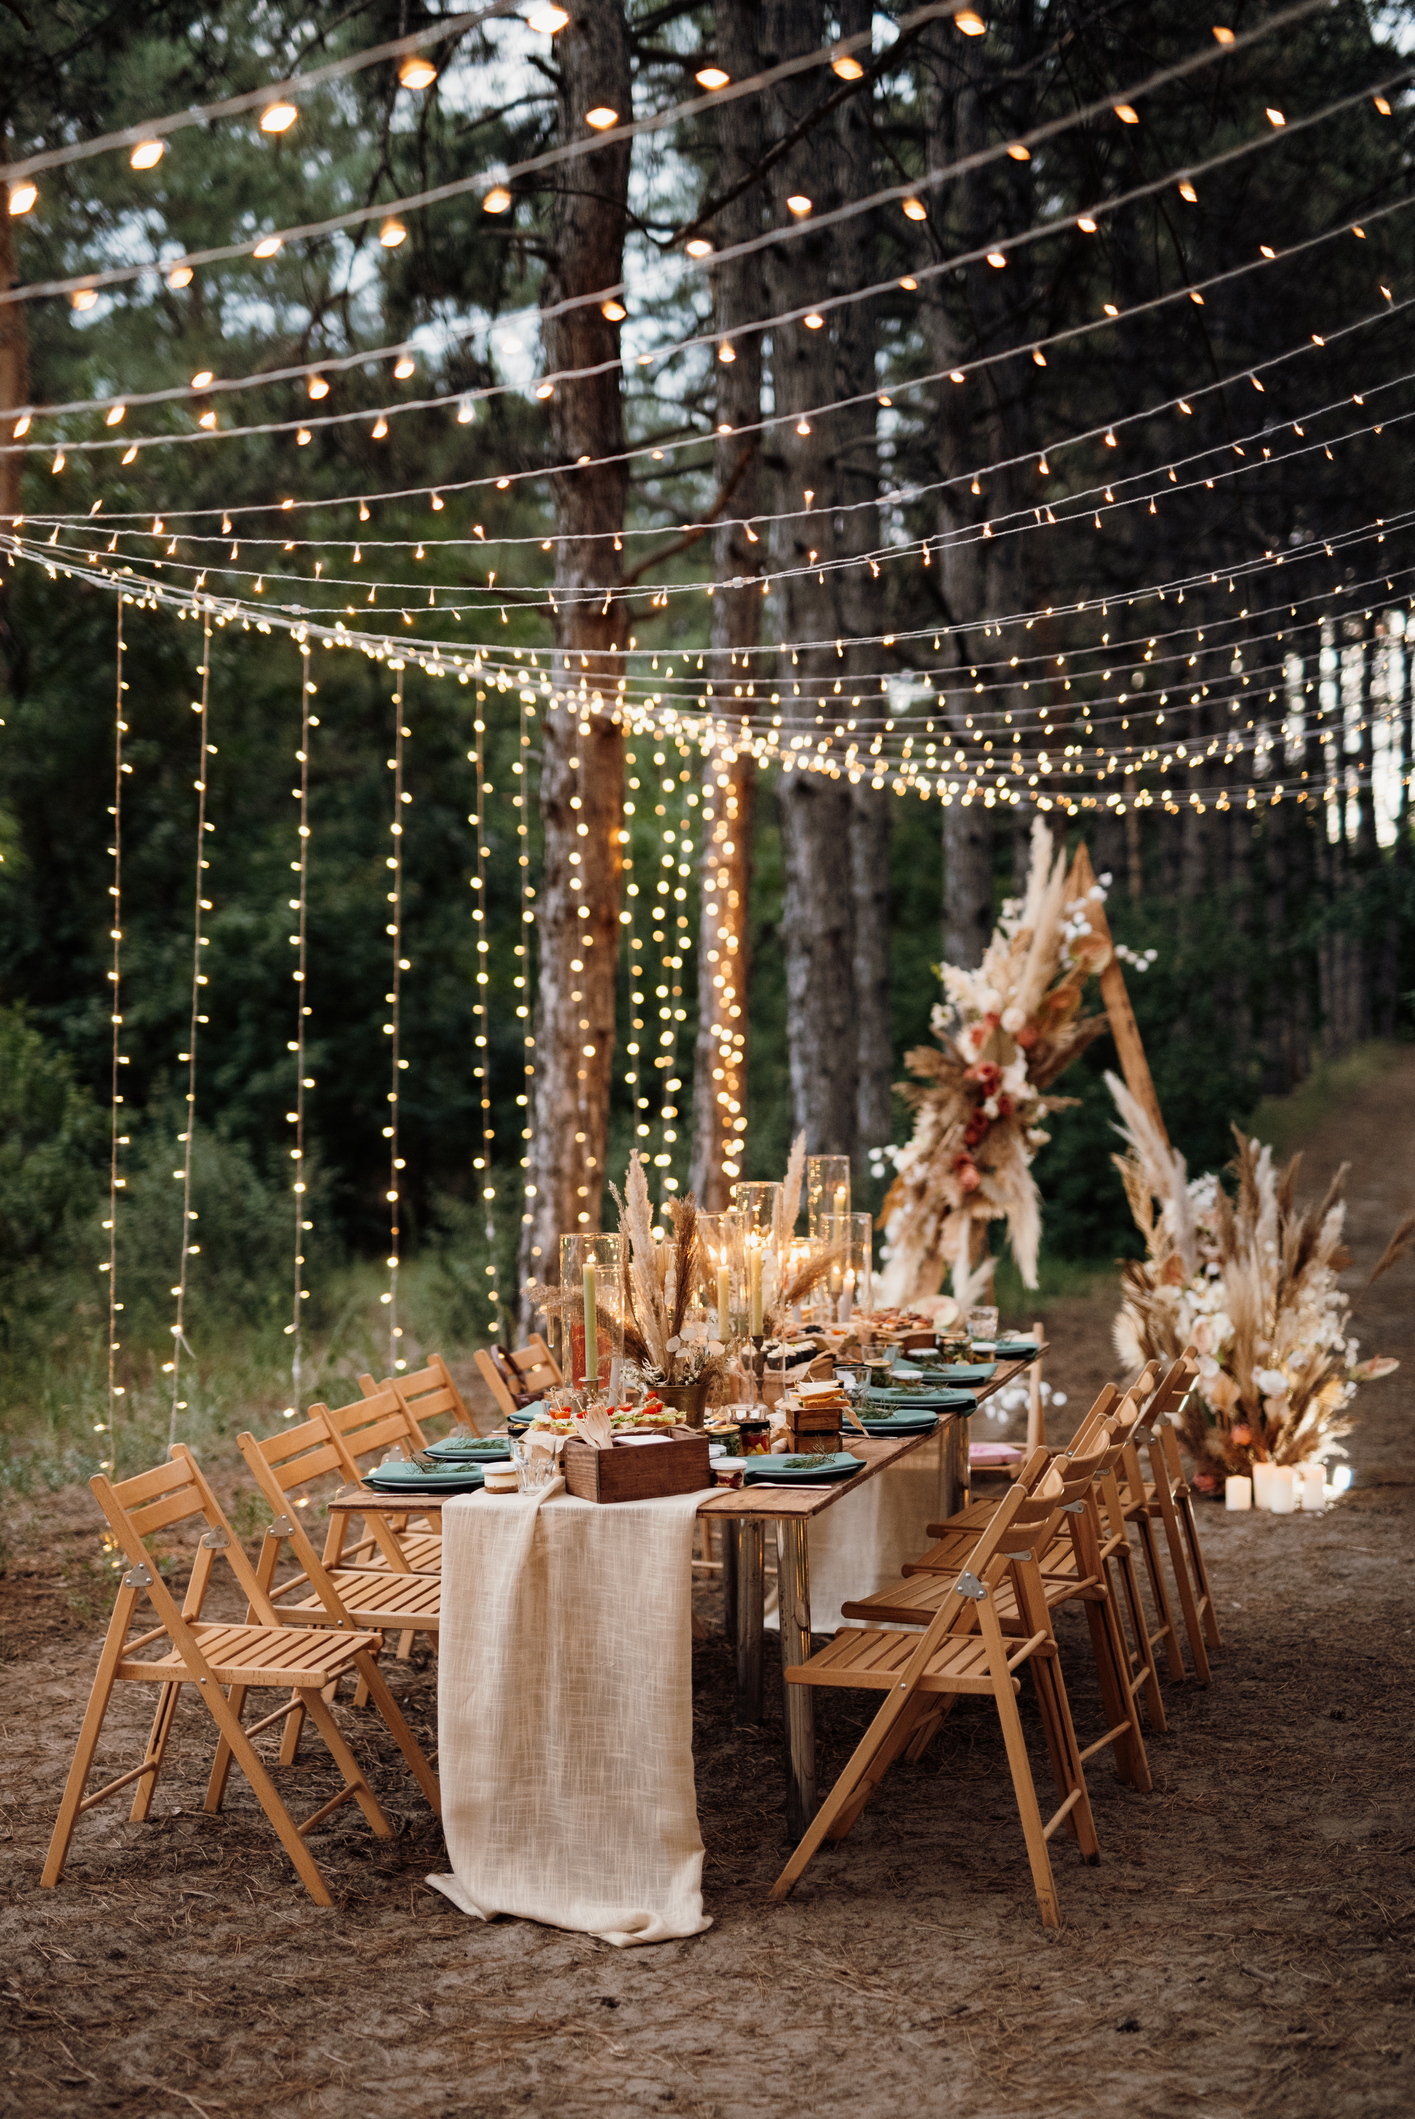 Eine Hochzeitstafel im Wald lädt zum Feiern ein.